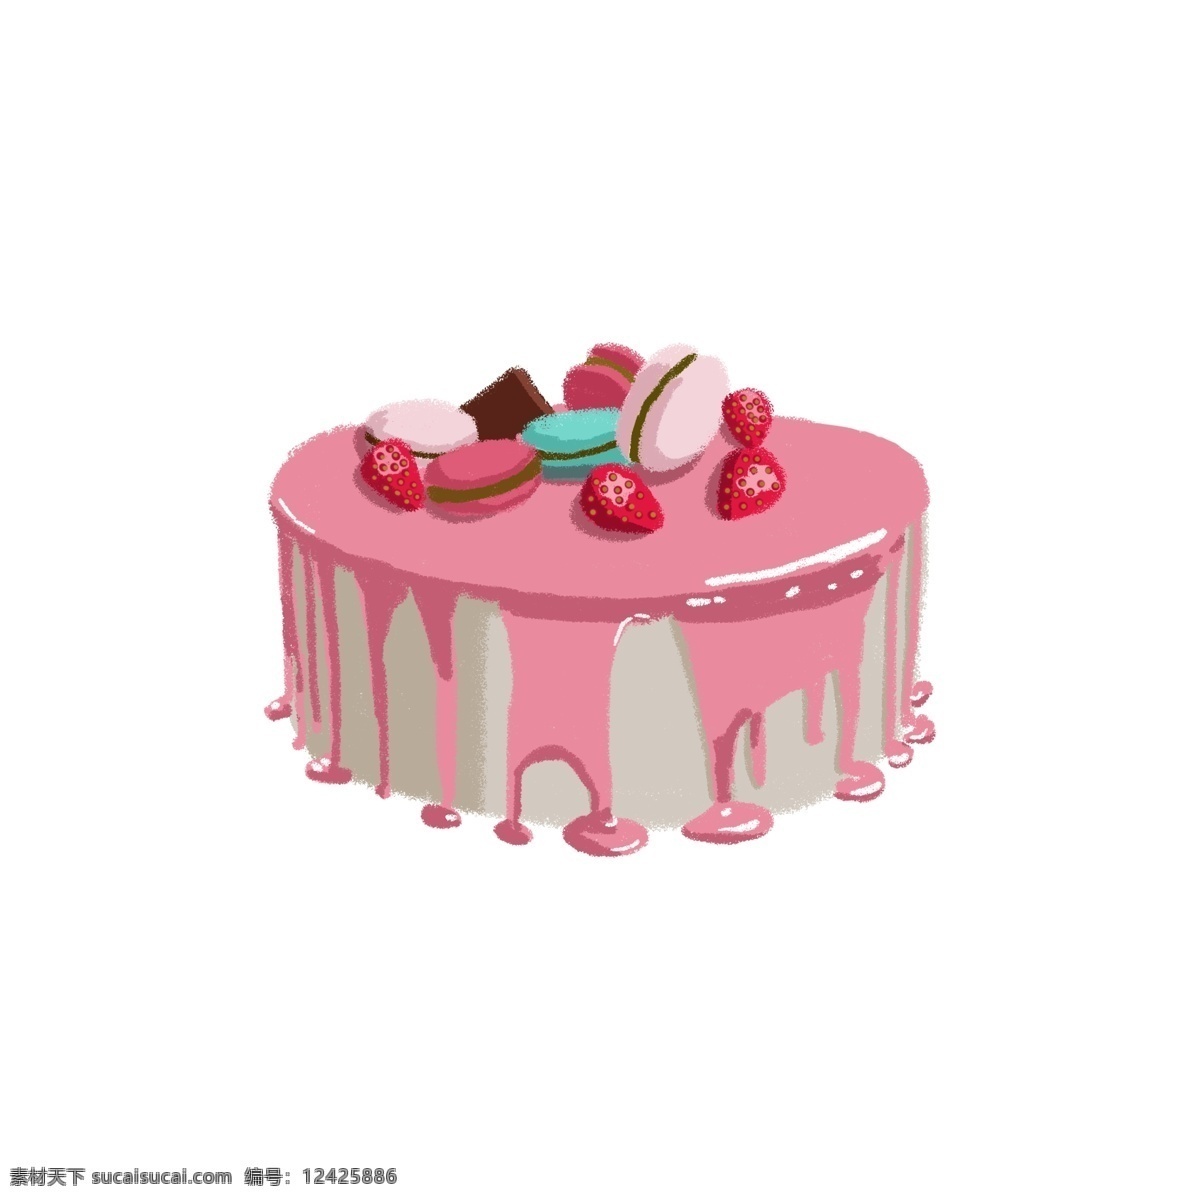 草莓 酱 马卡 龙 蛋糕 粉色蛋糕 草莓酱 马卡龙 巧克力 红色 粉色 蓝色 美味 酱汁 甜点 甜品 甜食